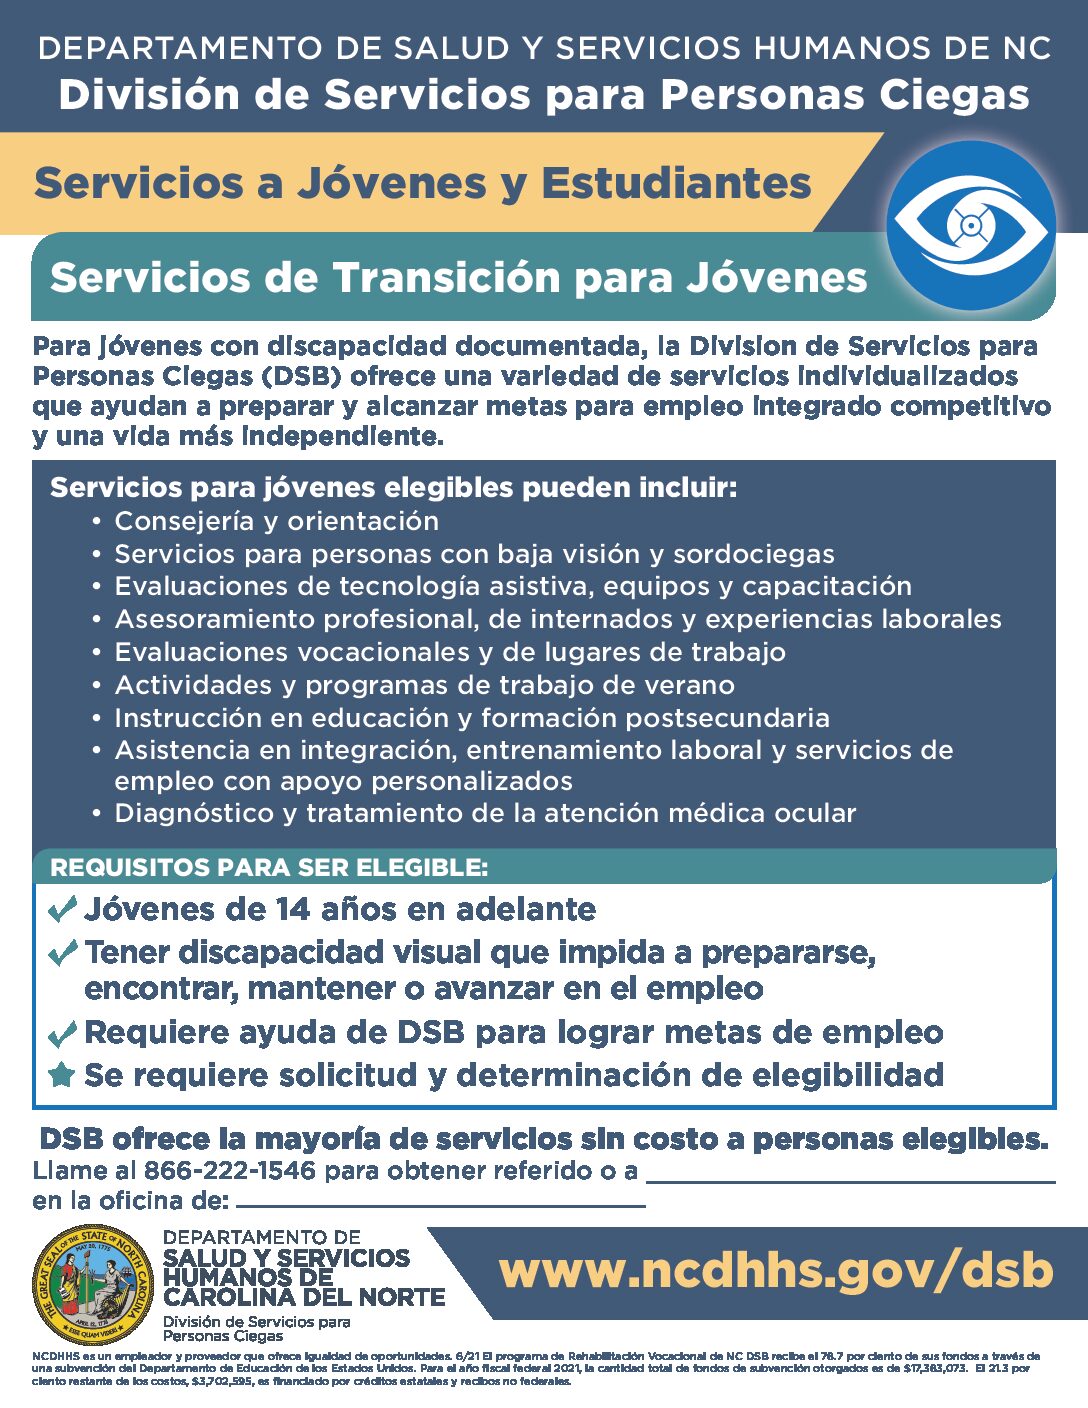 خدمات انتقال DSB (الإسبانية جاهزة للويب)